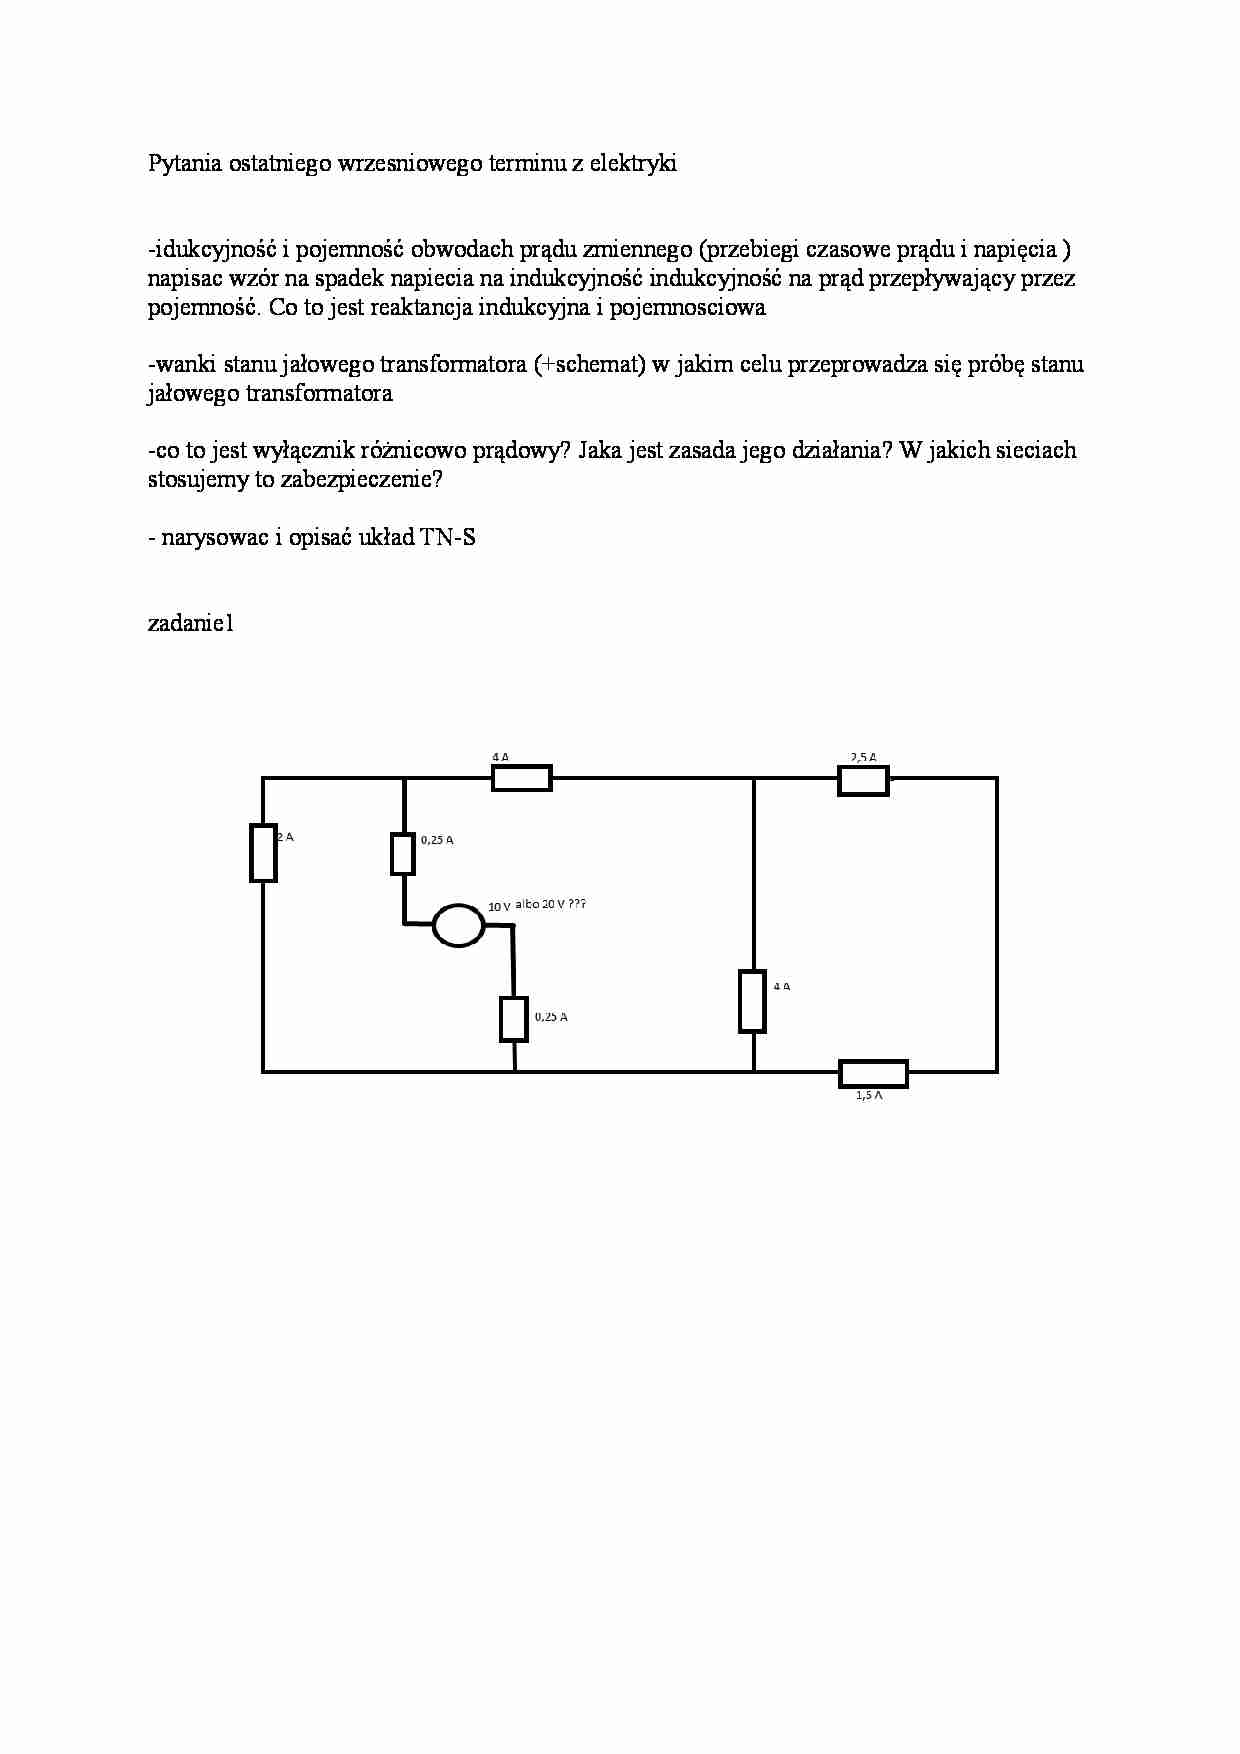 Pytania z egzaminu-urządzenia i instalacje elektryczne - strona 1